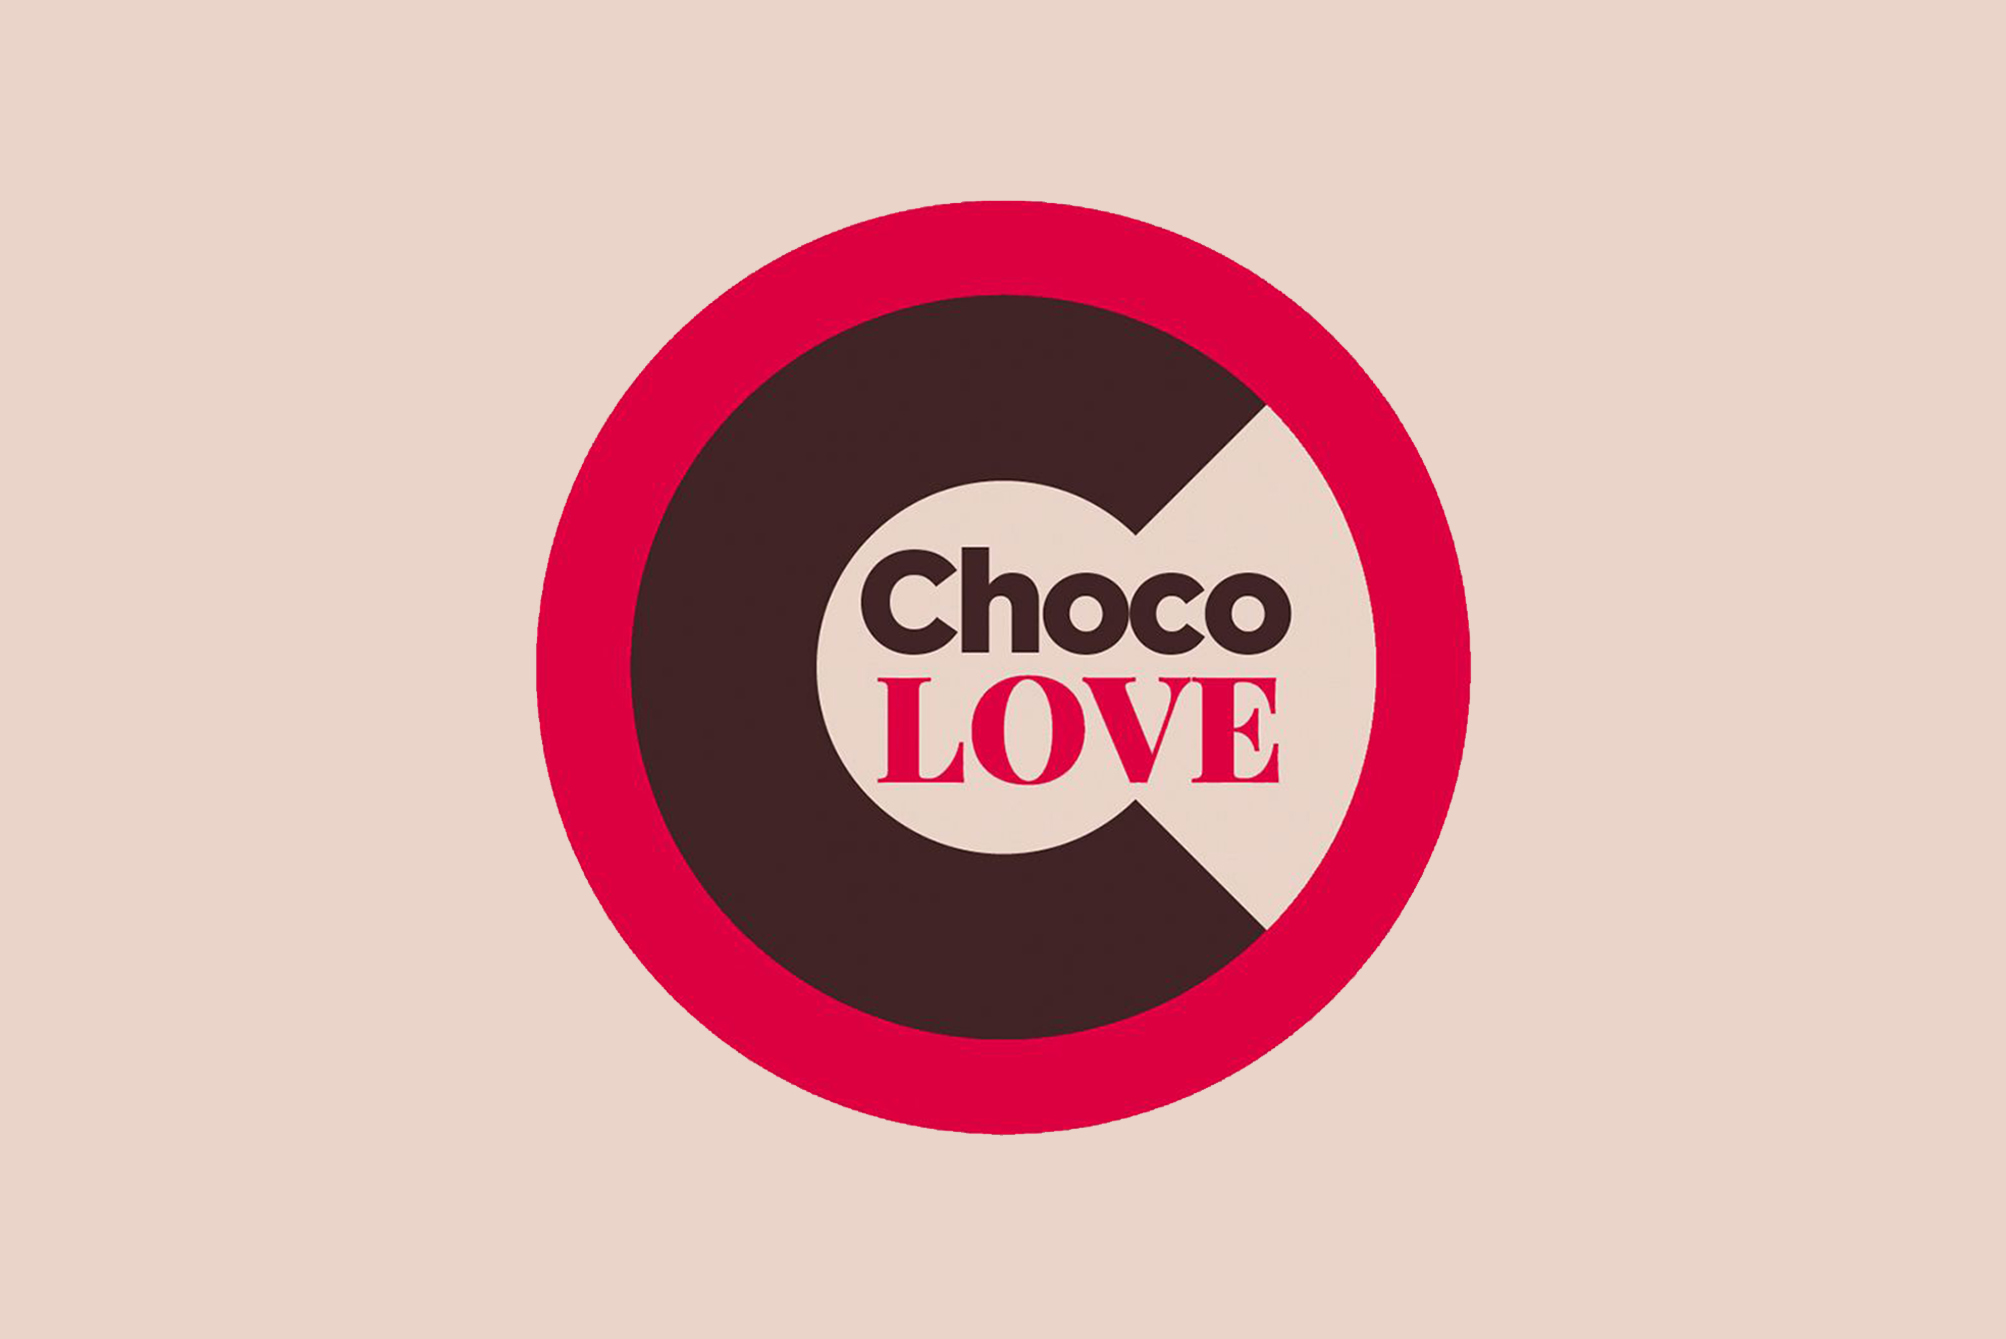 ChocoLove event logo